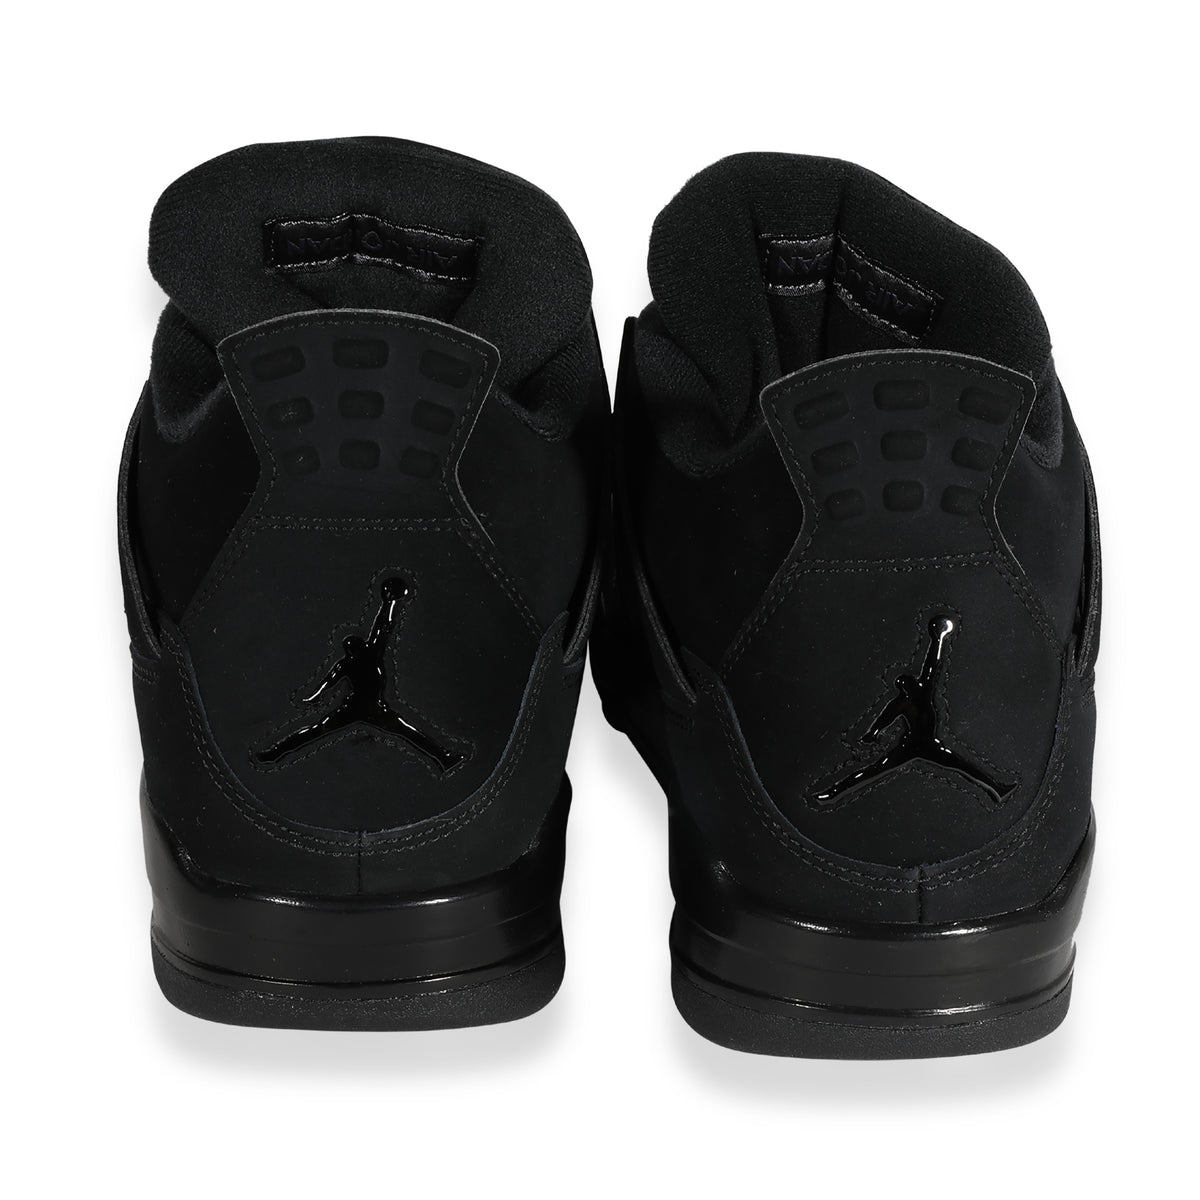 Air Jordan 4 Retro 'Black Cat' 2020 